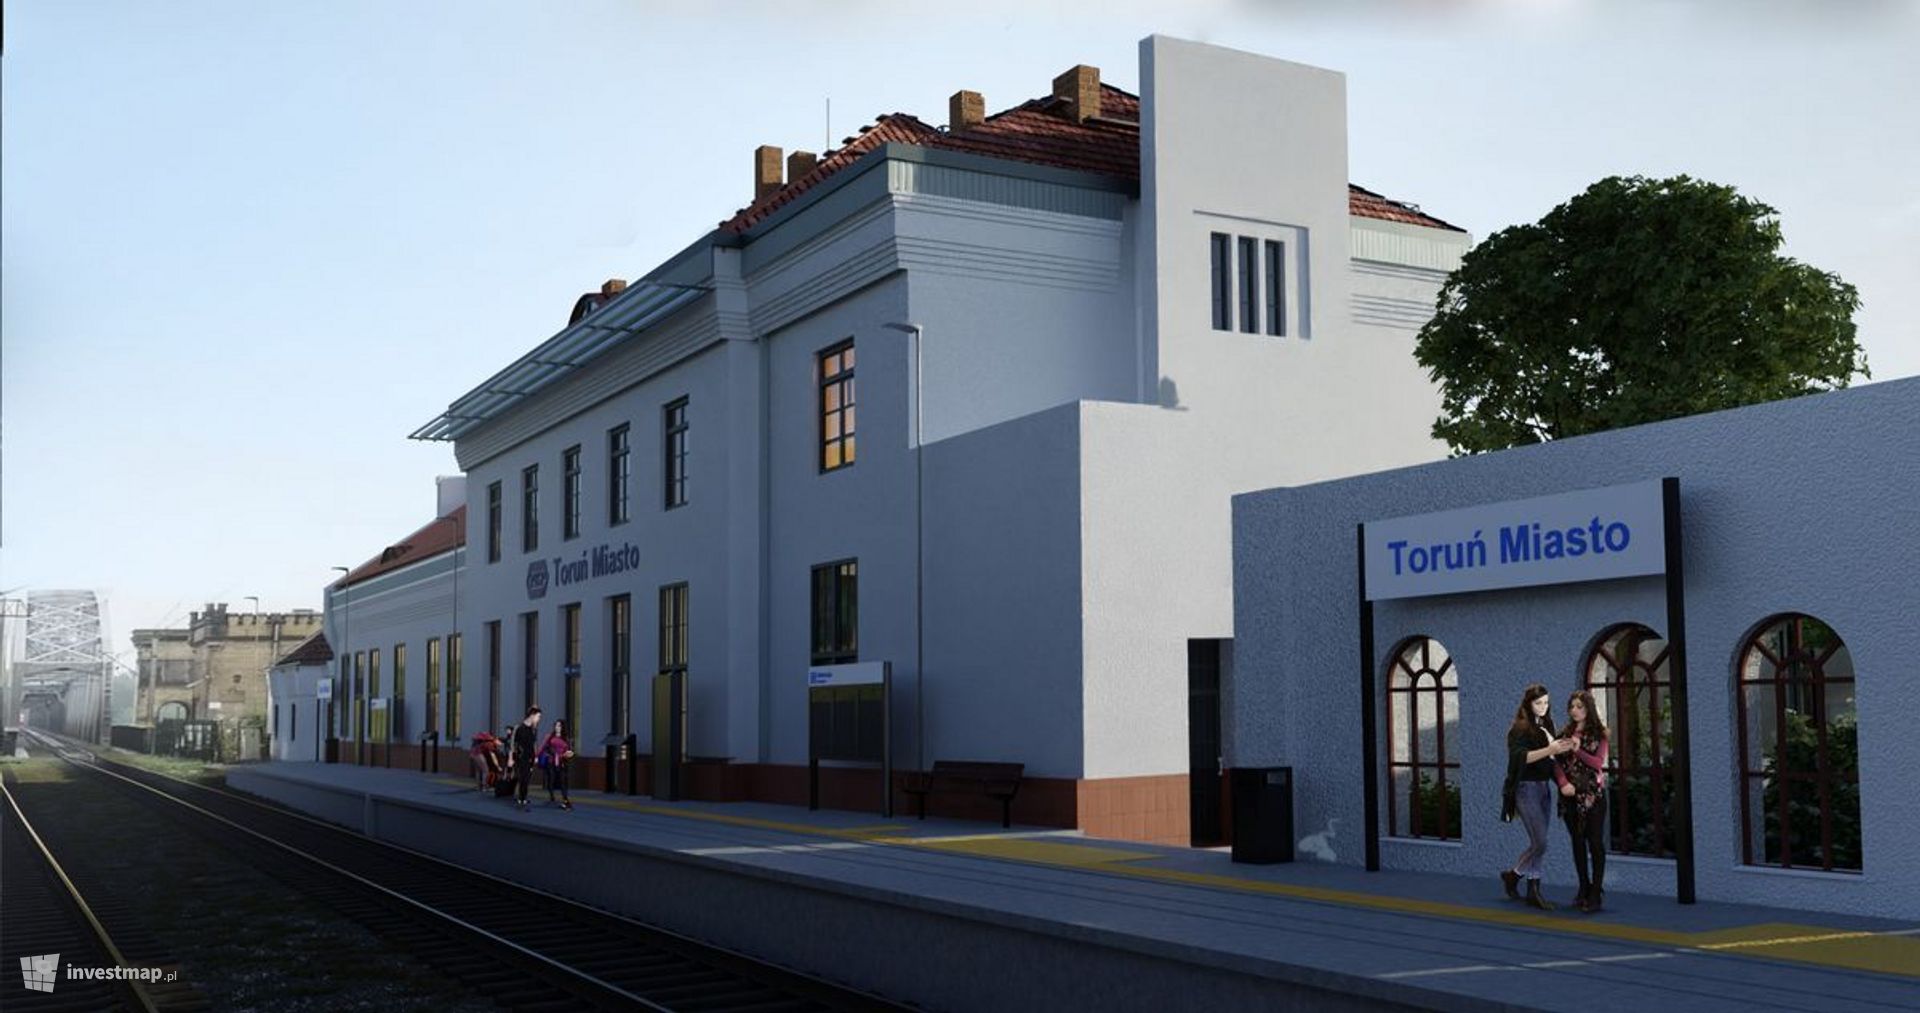 Rusza remont dworca kolejowego Toruń Miasto 